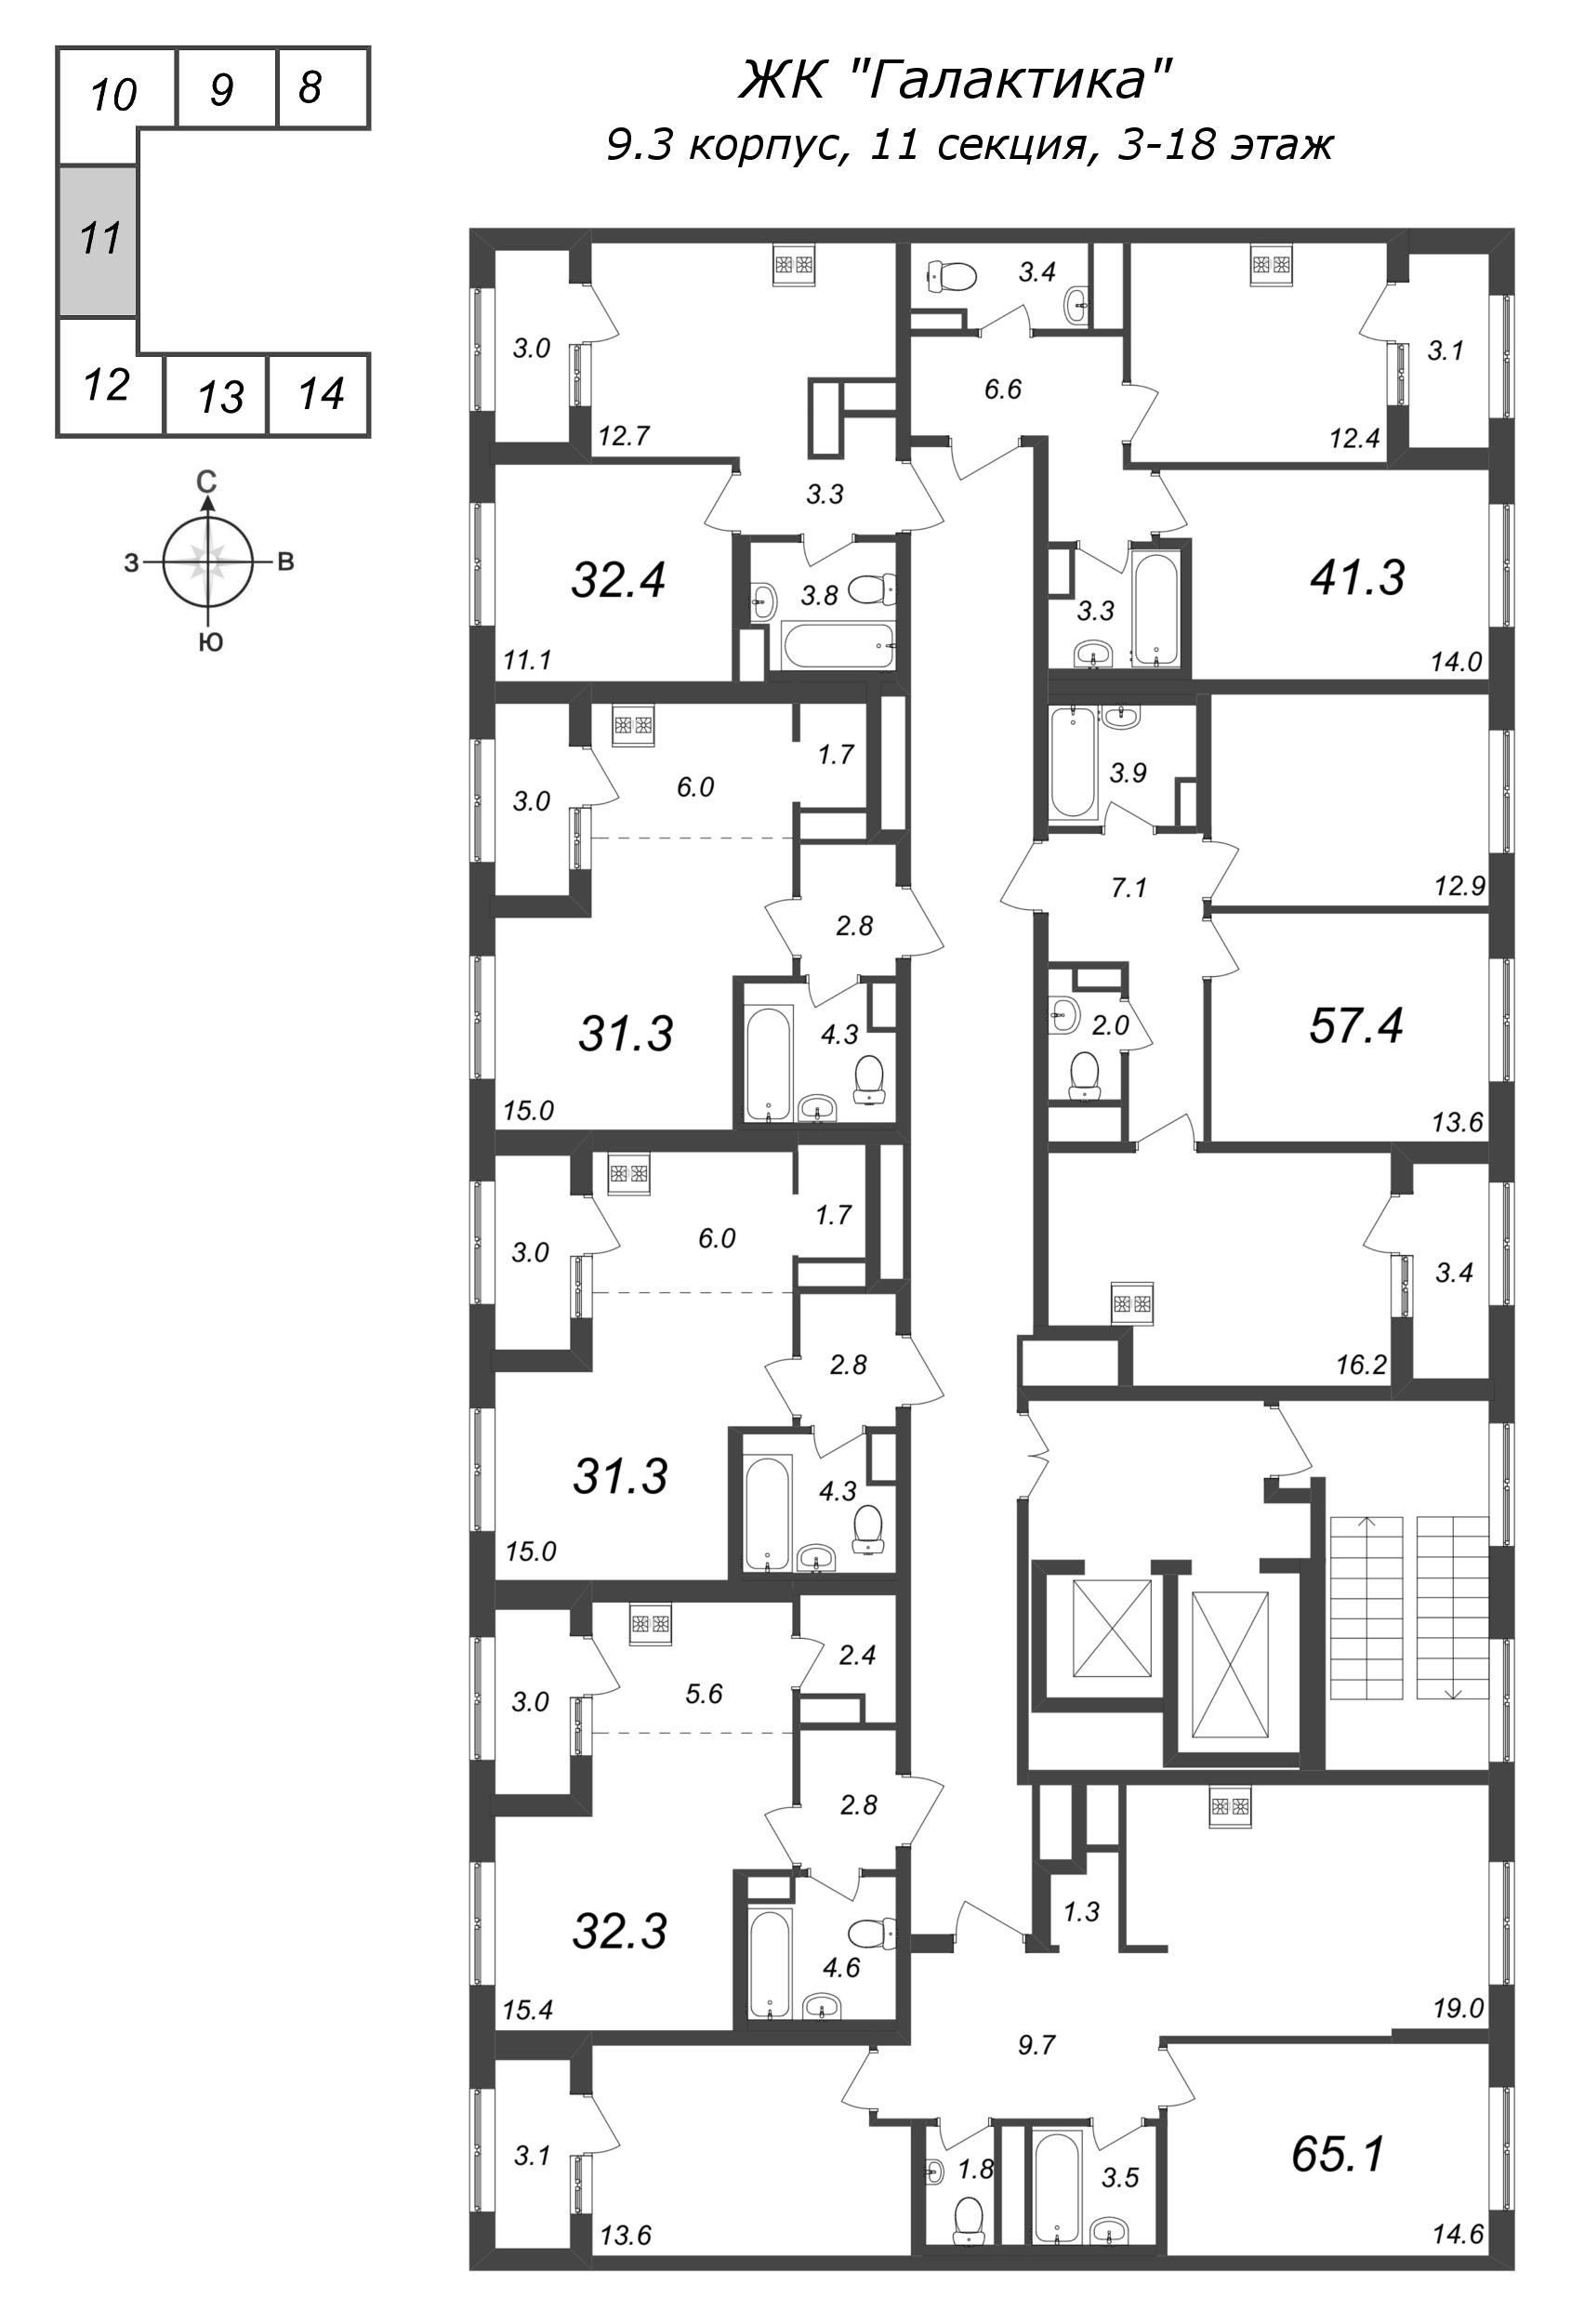 Квартира-студия, 31.3 м² в ЖК "Галактика" - планировка этажа